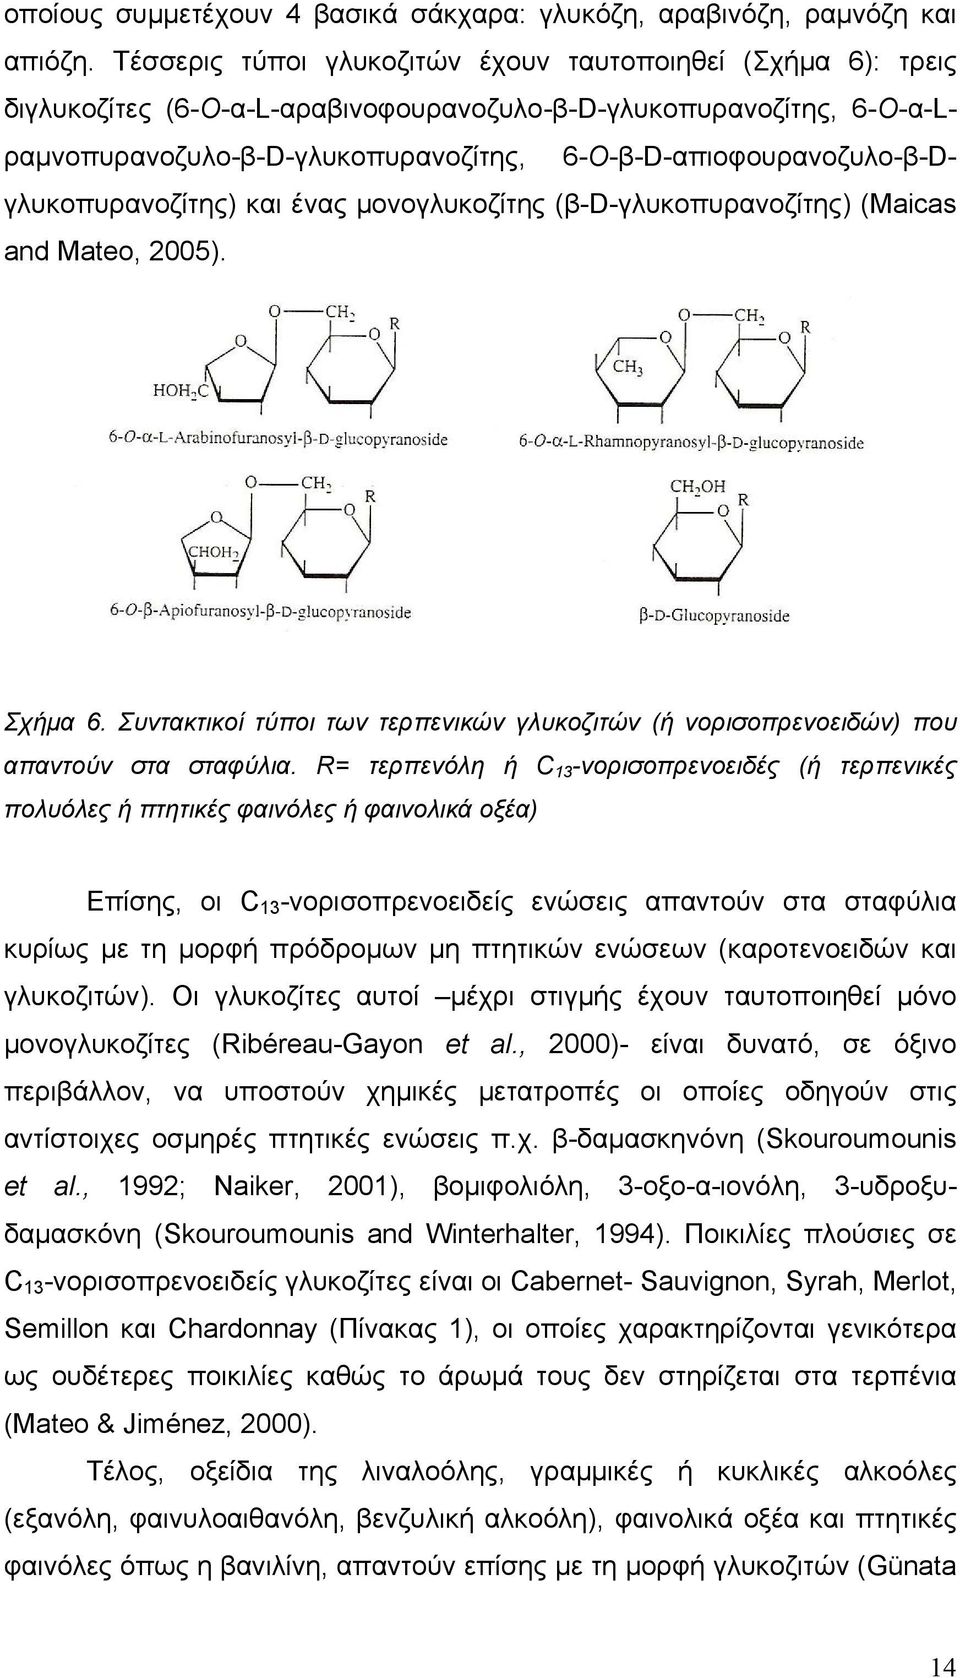 6-Ο-β-D-απιοφουρανοζυλο-β-Dγλυκοπυρανοζίτης) και ένας µονογλυκοζίτης (β-d-γλυκοπυρανοζίτης) (Maicas and Mateo, 2005). Σχήµα 6.